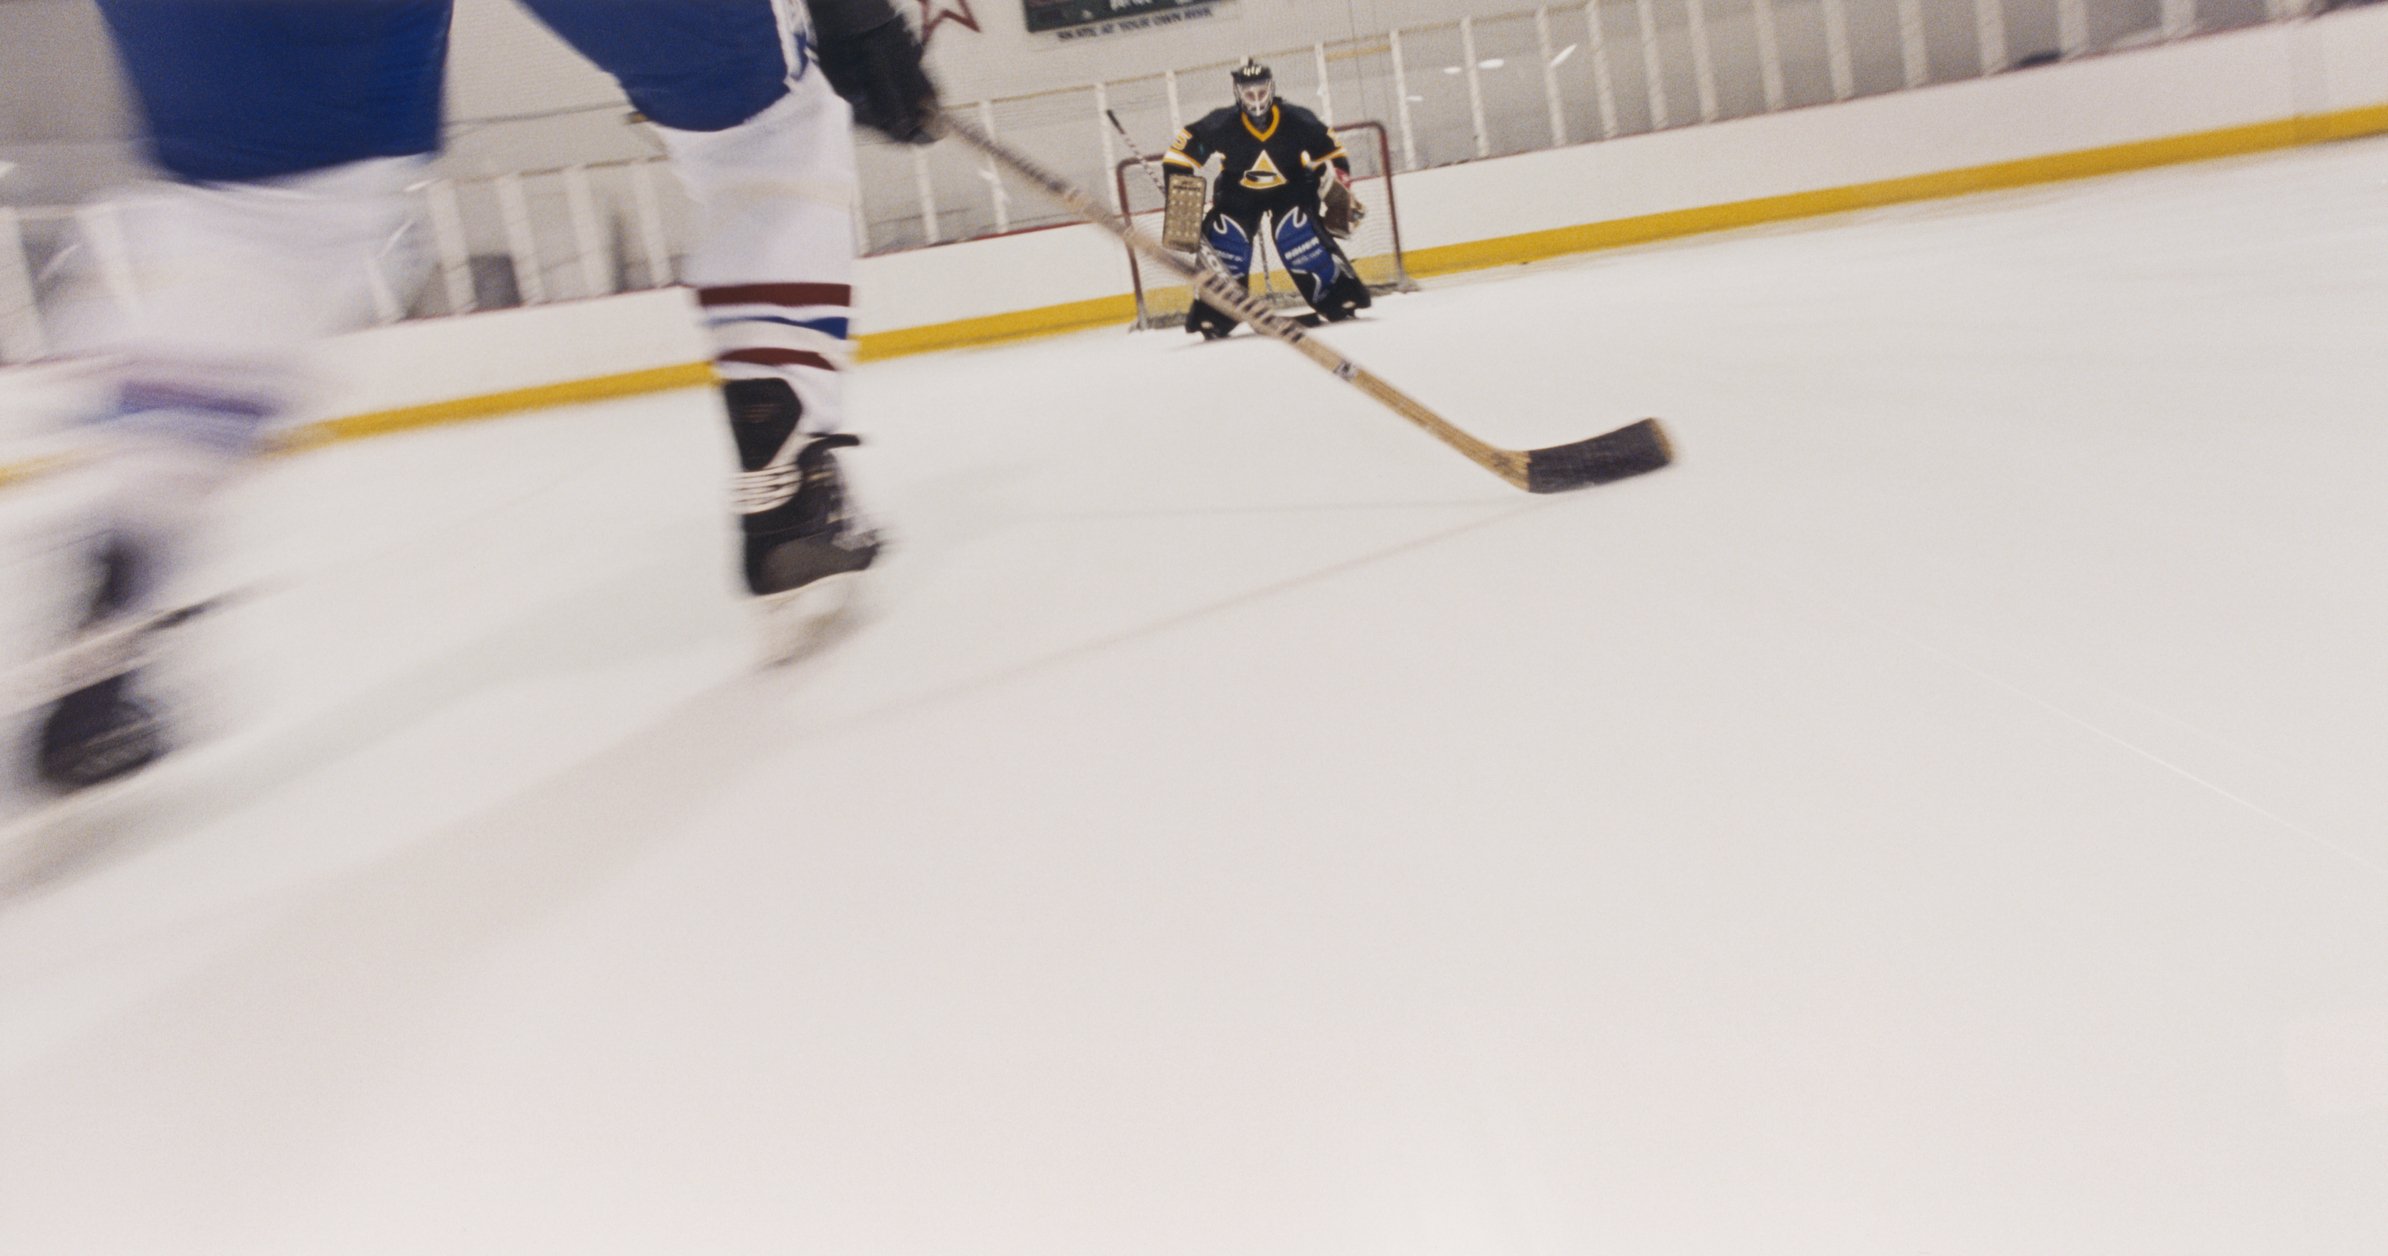 Hockeyspieler, der zum Ziel skatet. I Quelle: Getty Images